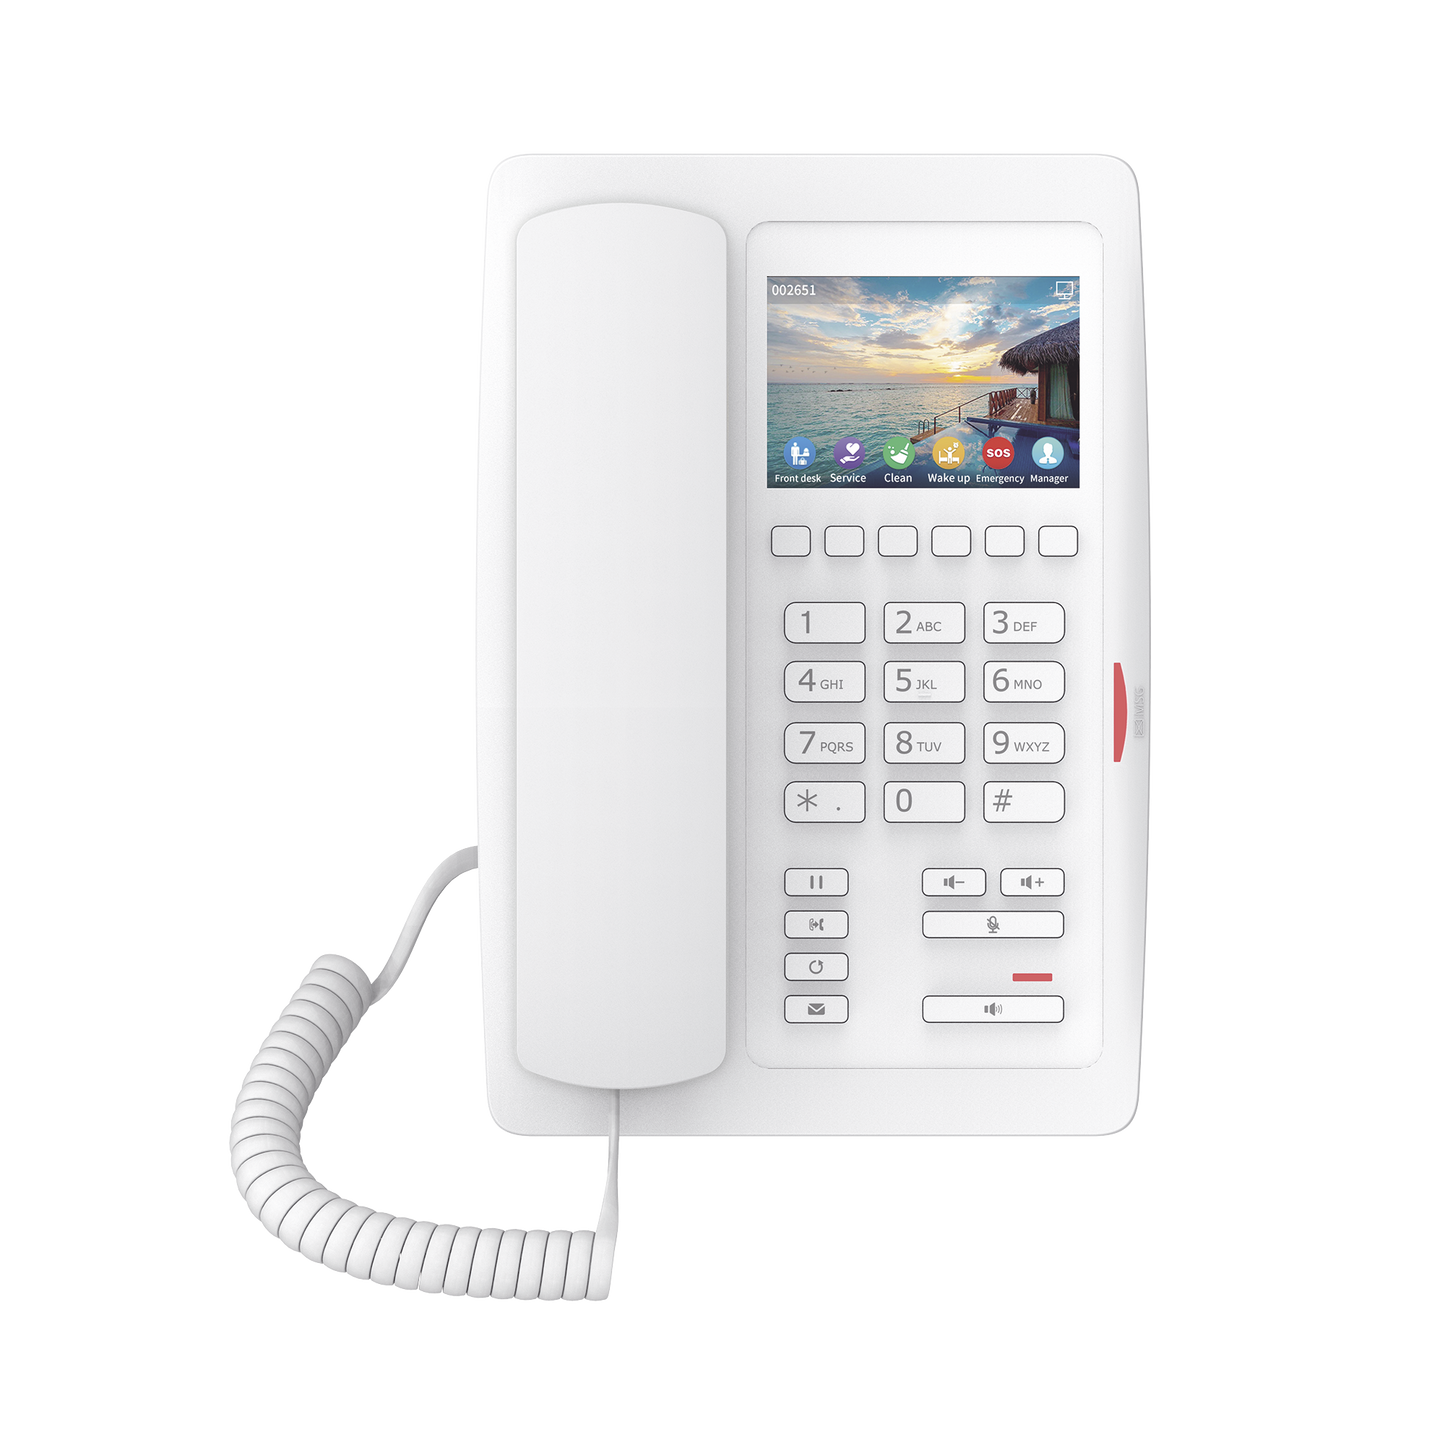 (H5W Color Blanco)Teléfono IP WiFi para Hotelería, profesional de gama alta con pantalla LCD de 3.5 pulgadas a color, 6 teclas programables para servicio rápido (Hotline) PoE